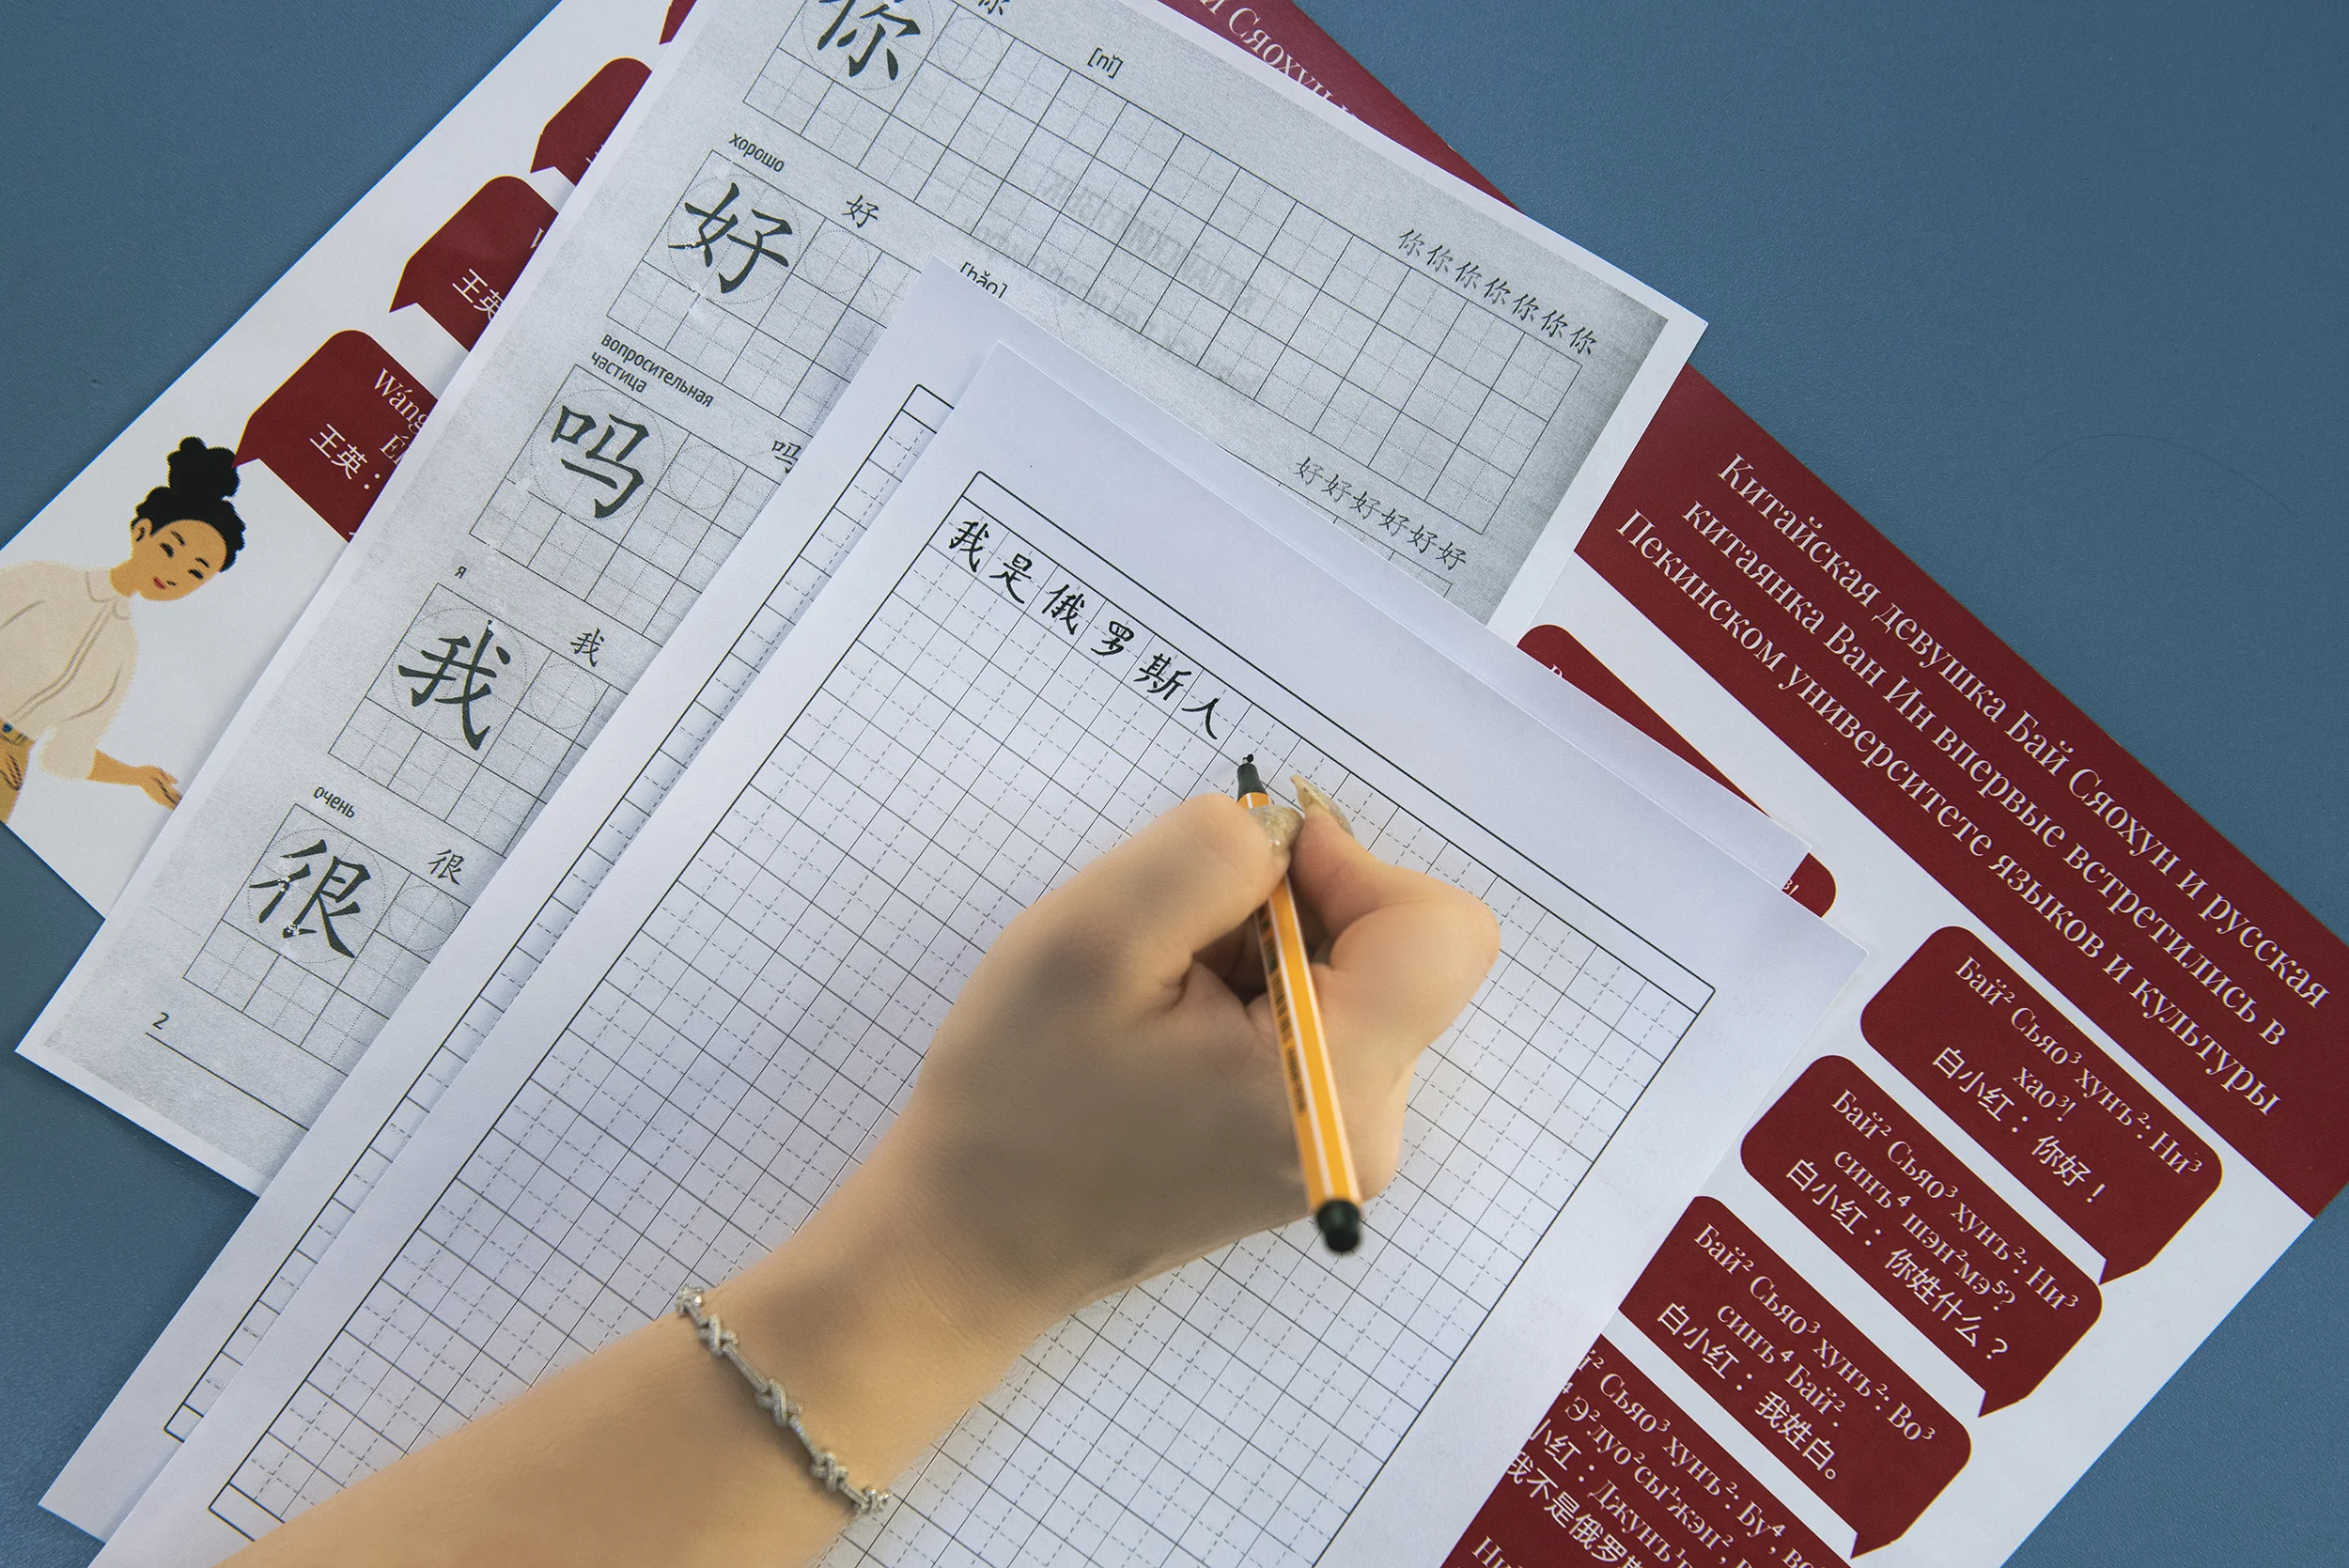 В ДГТУ разработали транскрипционную систему китайских иероглифов на основе русского алфавита